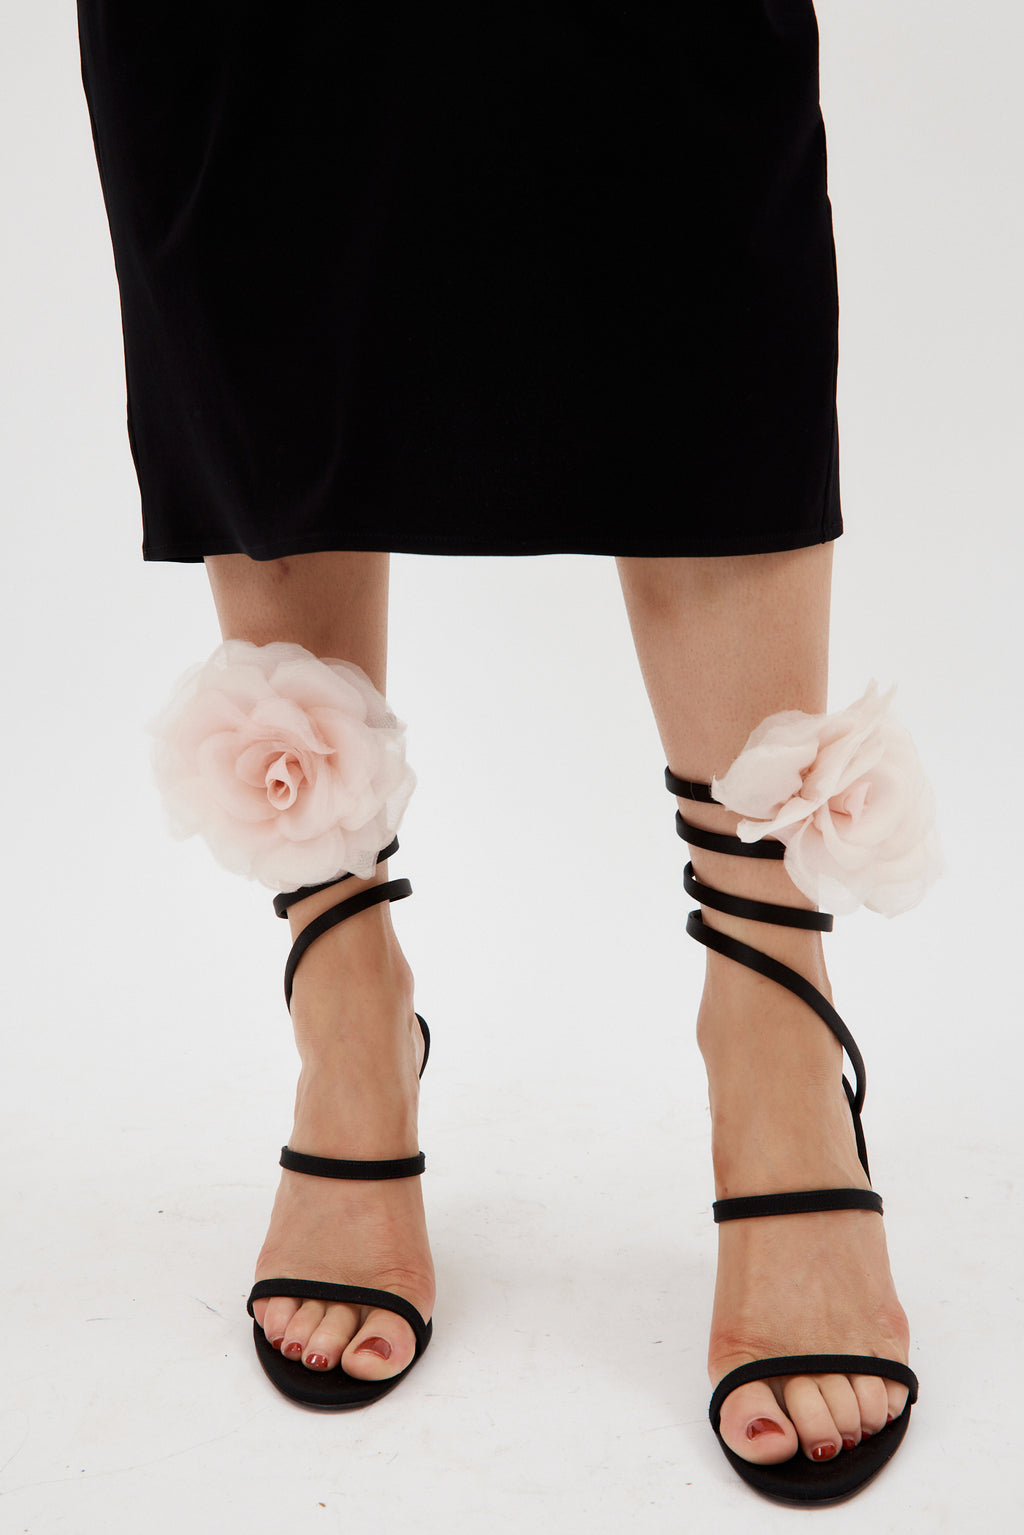 Oversized Pink Flower Spiral Black Sandals